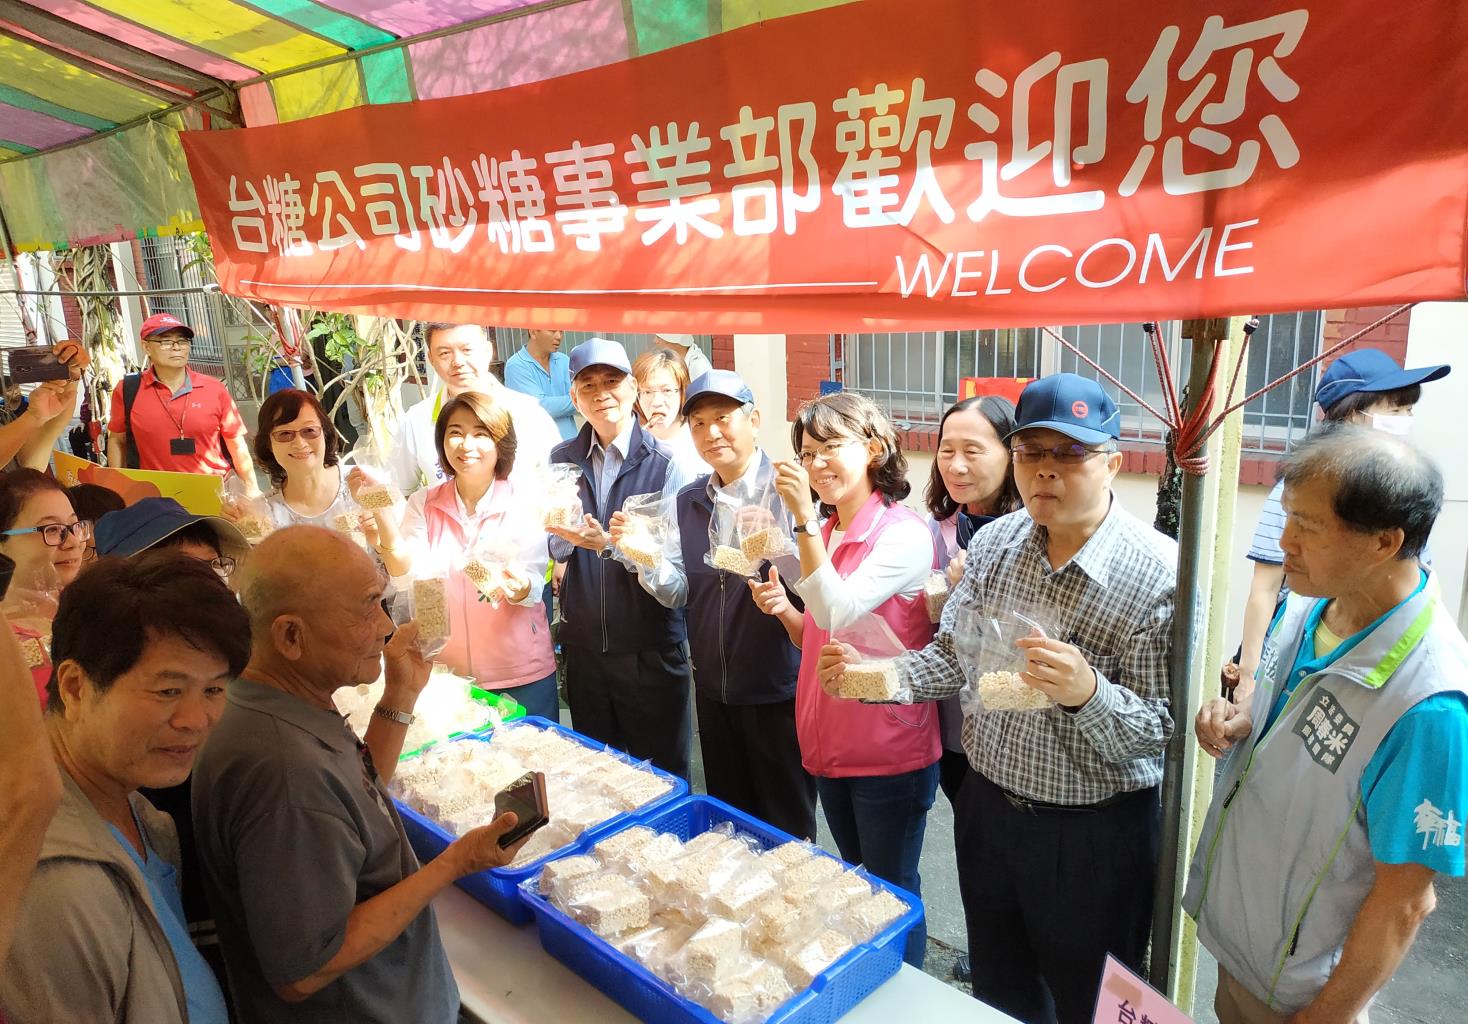 萬丹甘蔗文化祭每年活動台糖都會提供暖暖的黑糖薑母茶及有機米爆米香，總是深獲民眾喜愛。